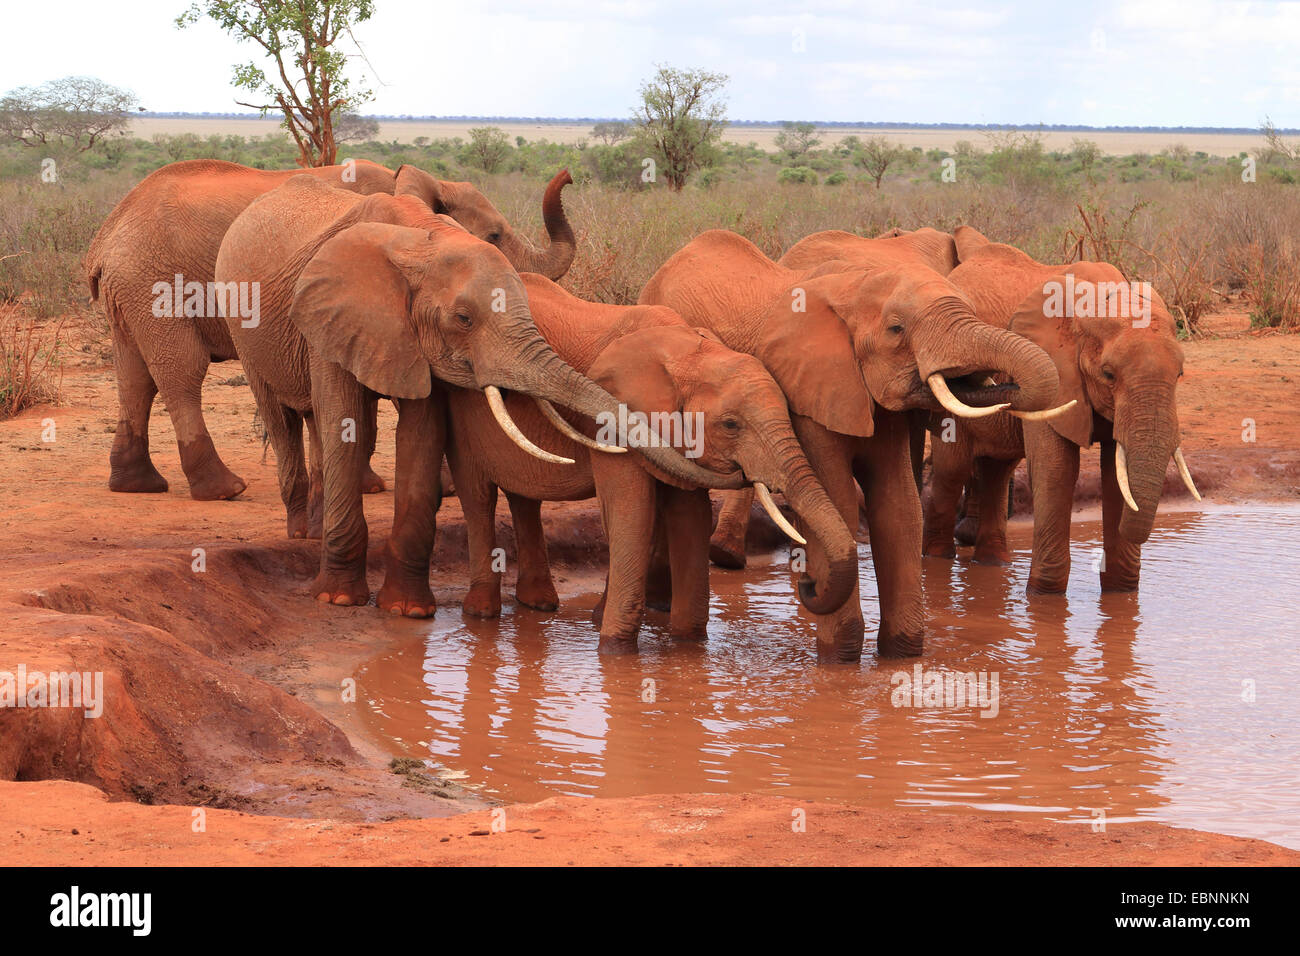 Elefante africano (Loxodonta africana), elefanti bevendo al foro per l'acqua, Kenya, parco nazionale orientale di Tsavo Foto Stock